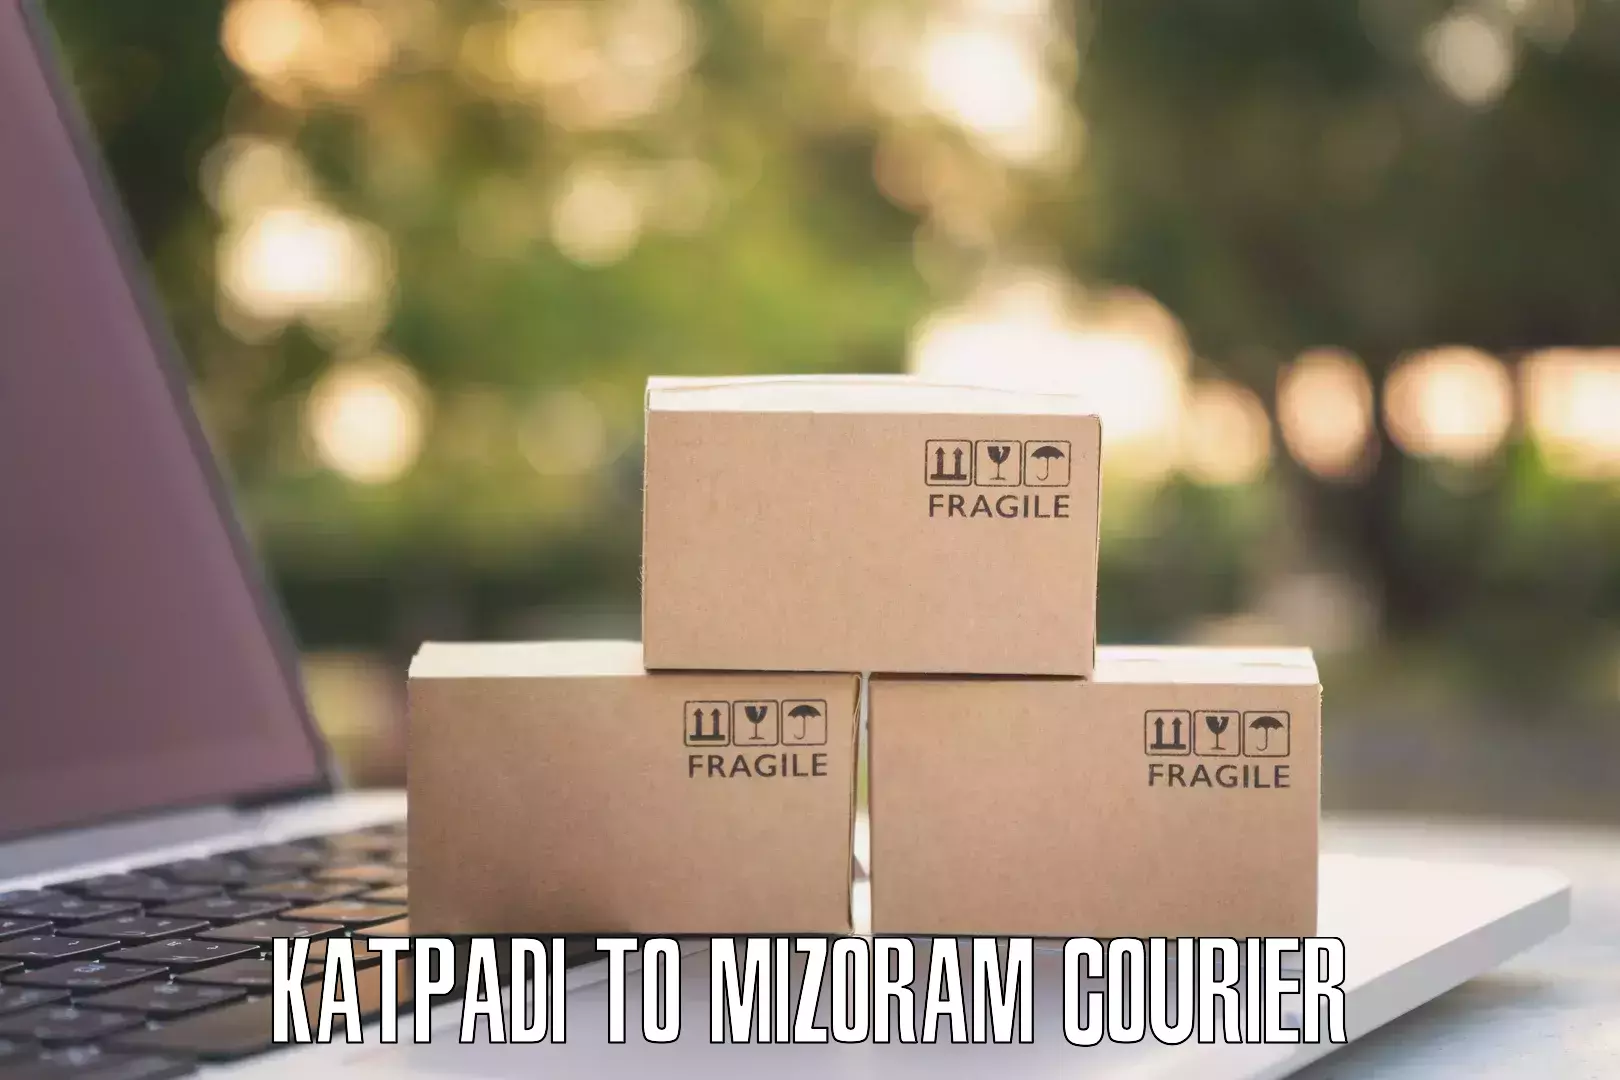 Tech-enabled shipping Katpadi to Siaha